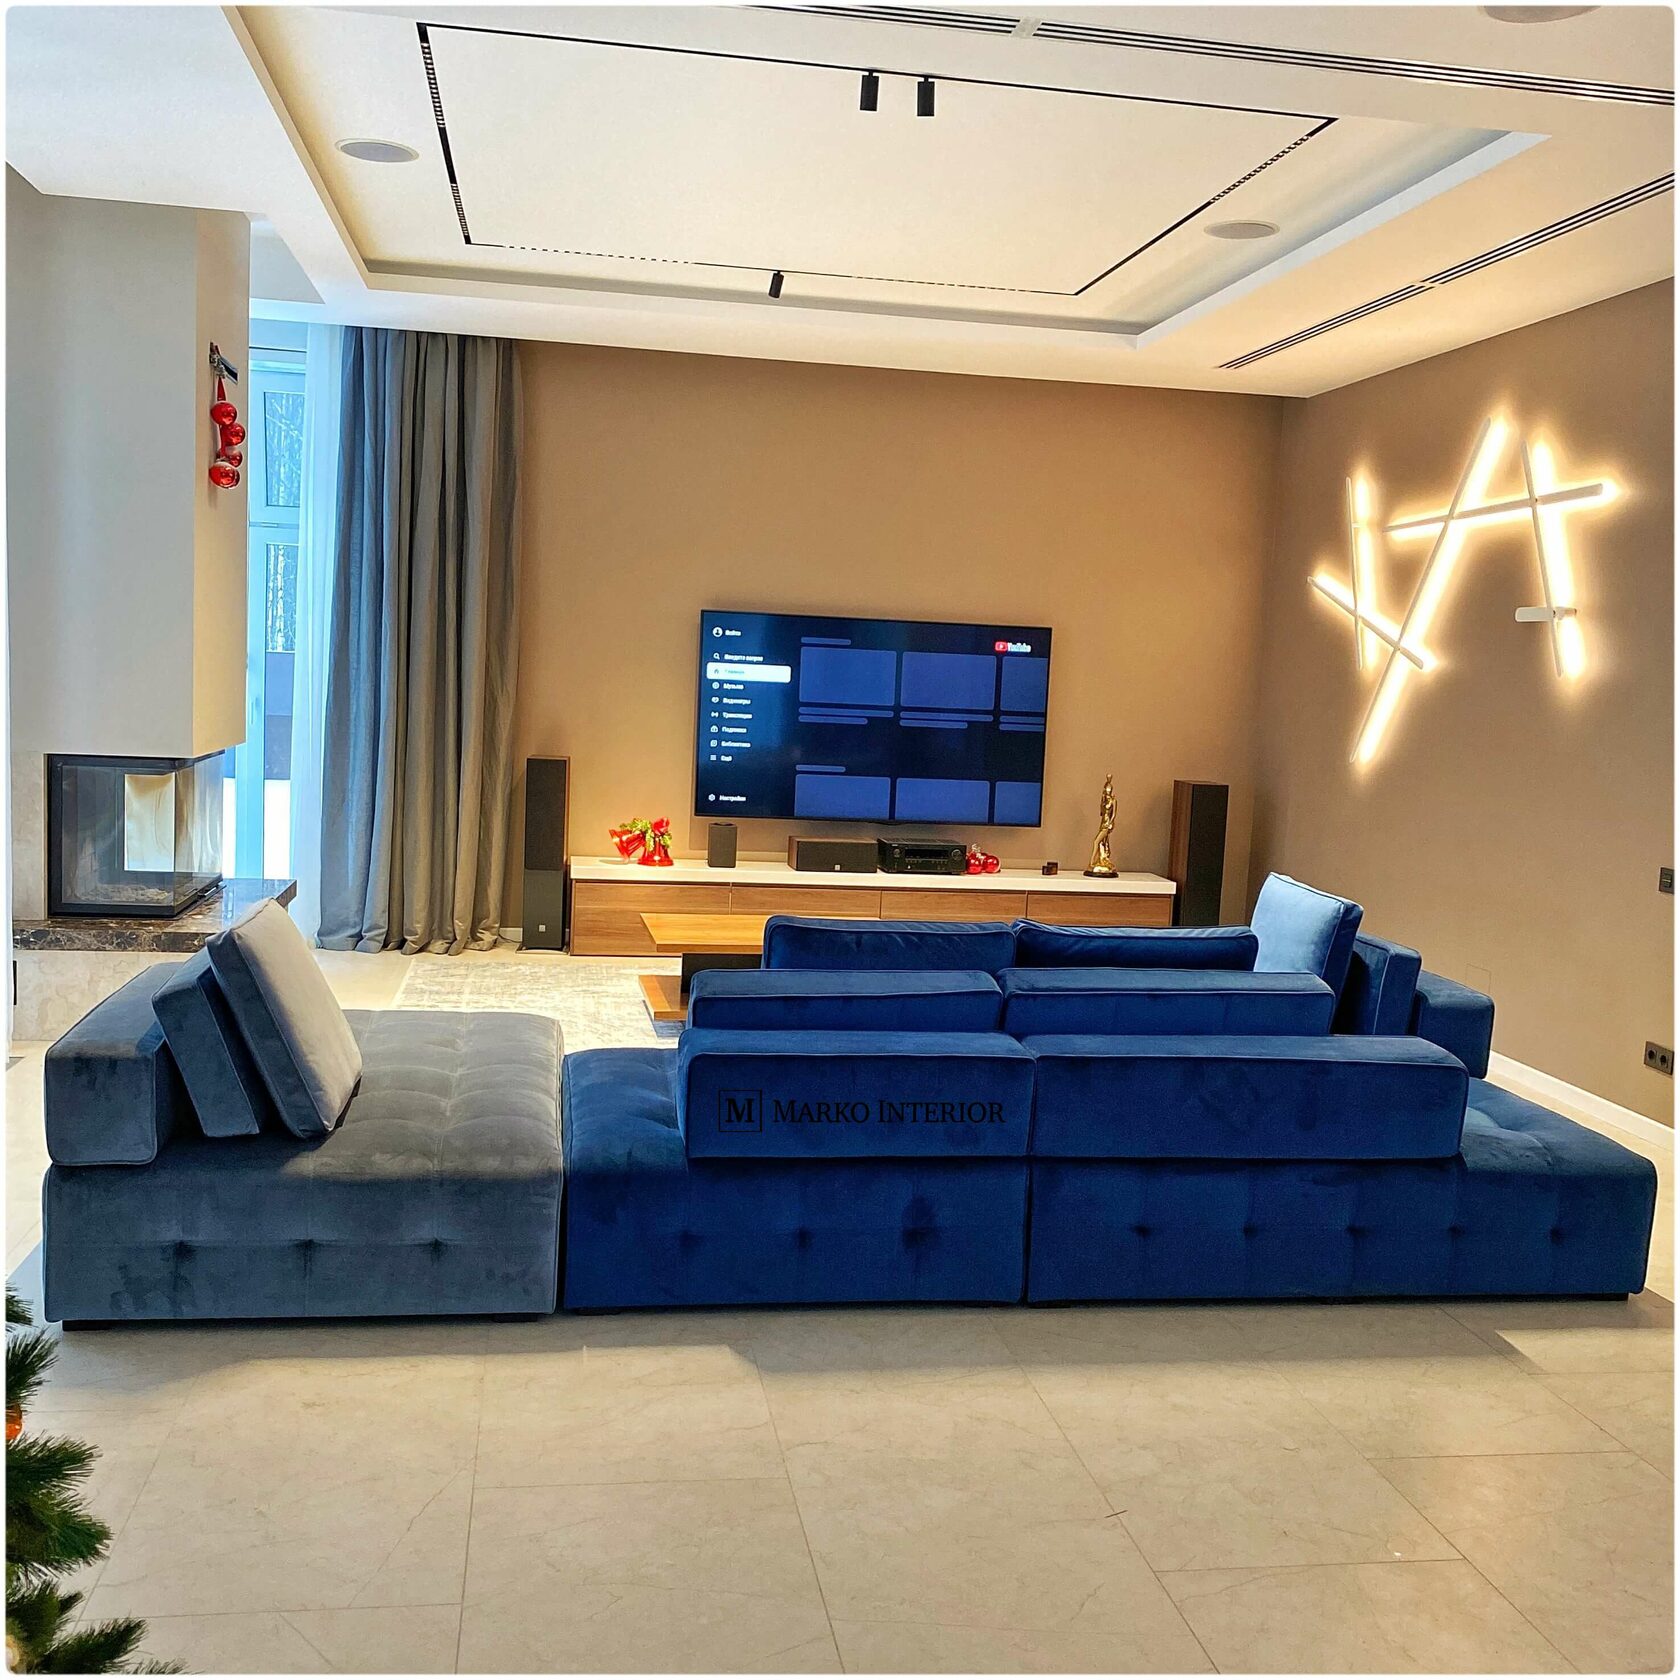 Модульная система диванов Минотти Лауренс Клан, Minotti Lawrence Clan, реплика модели Минотти, на заказ от компании Марко мебель в обивке на выбор